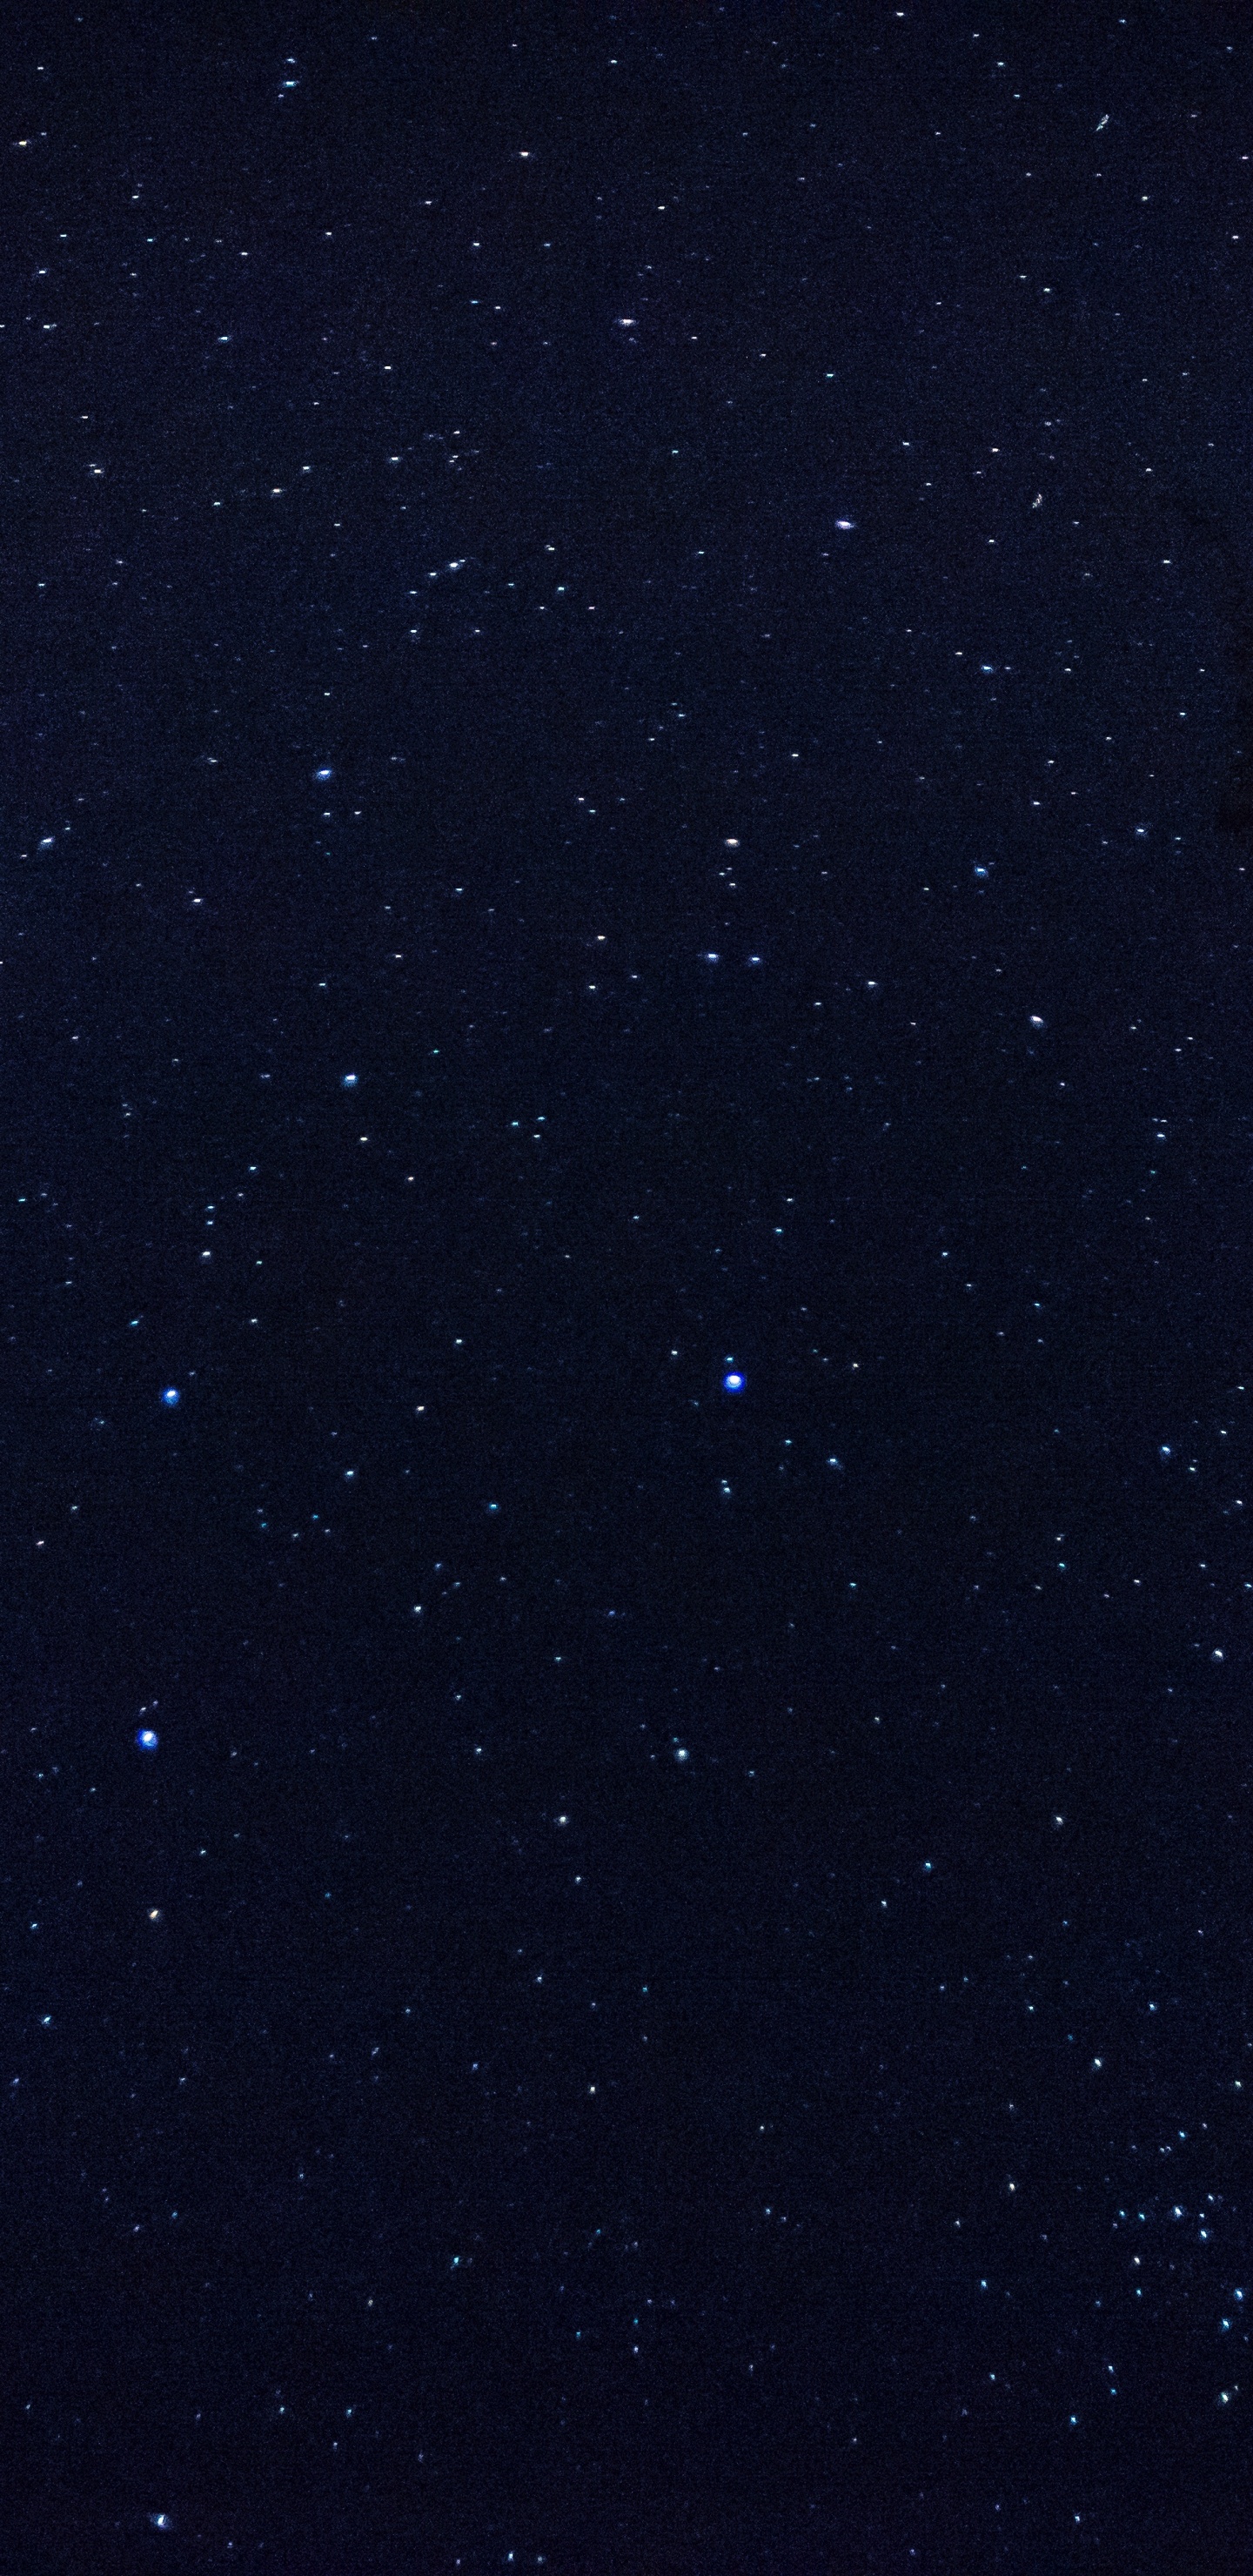 Schwarze Und Weiße Sternennacht. Wallpaper in 1440x2960 Resolution